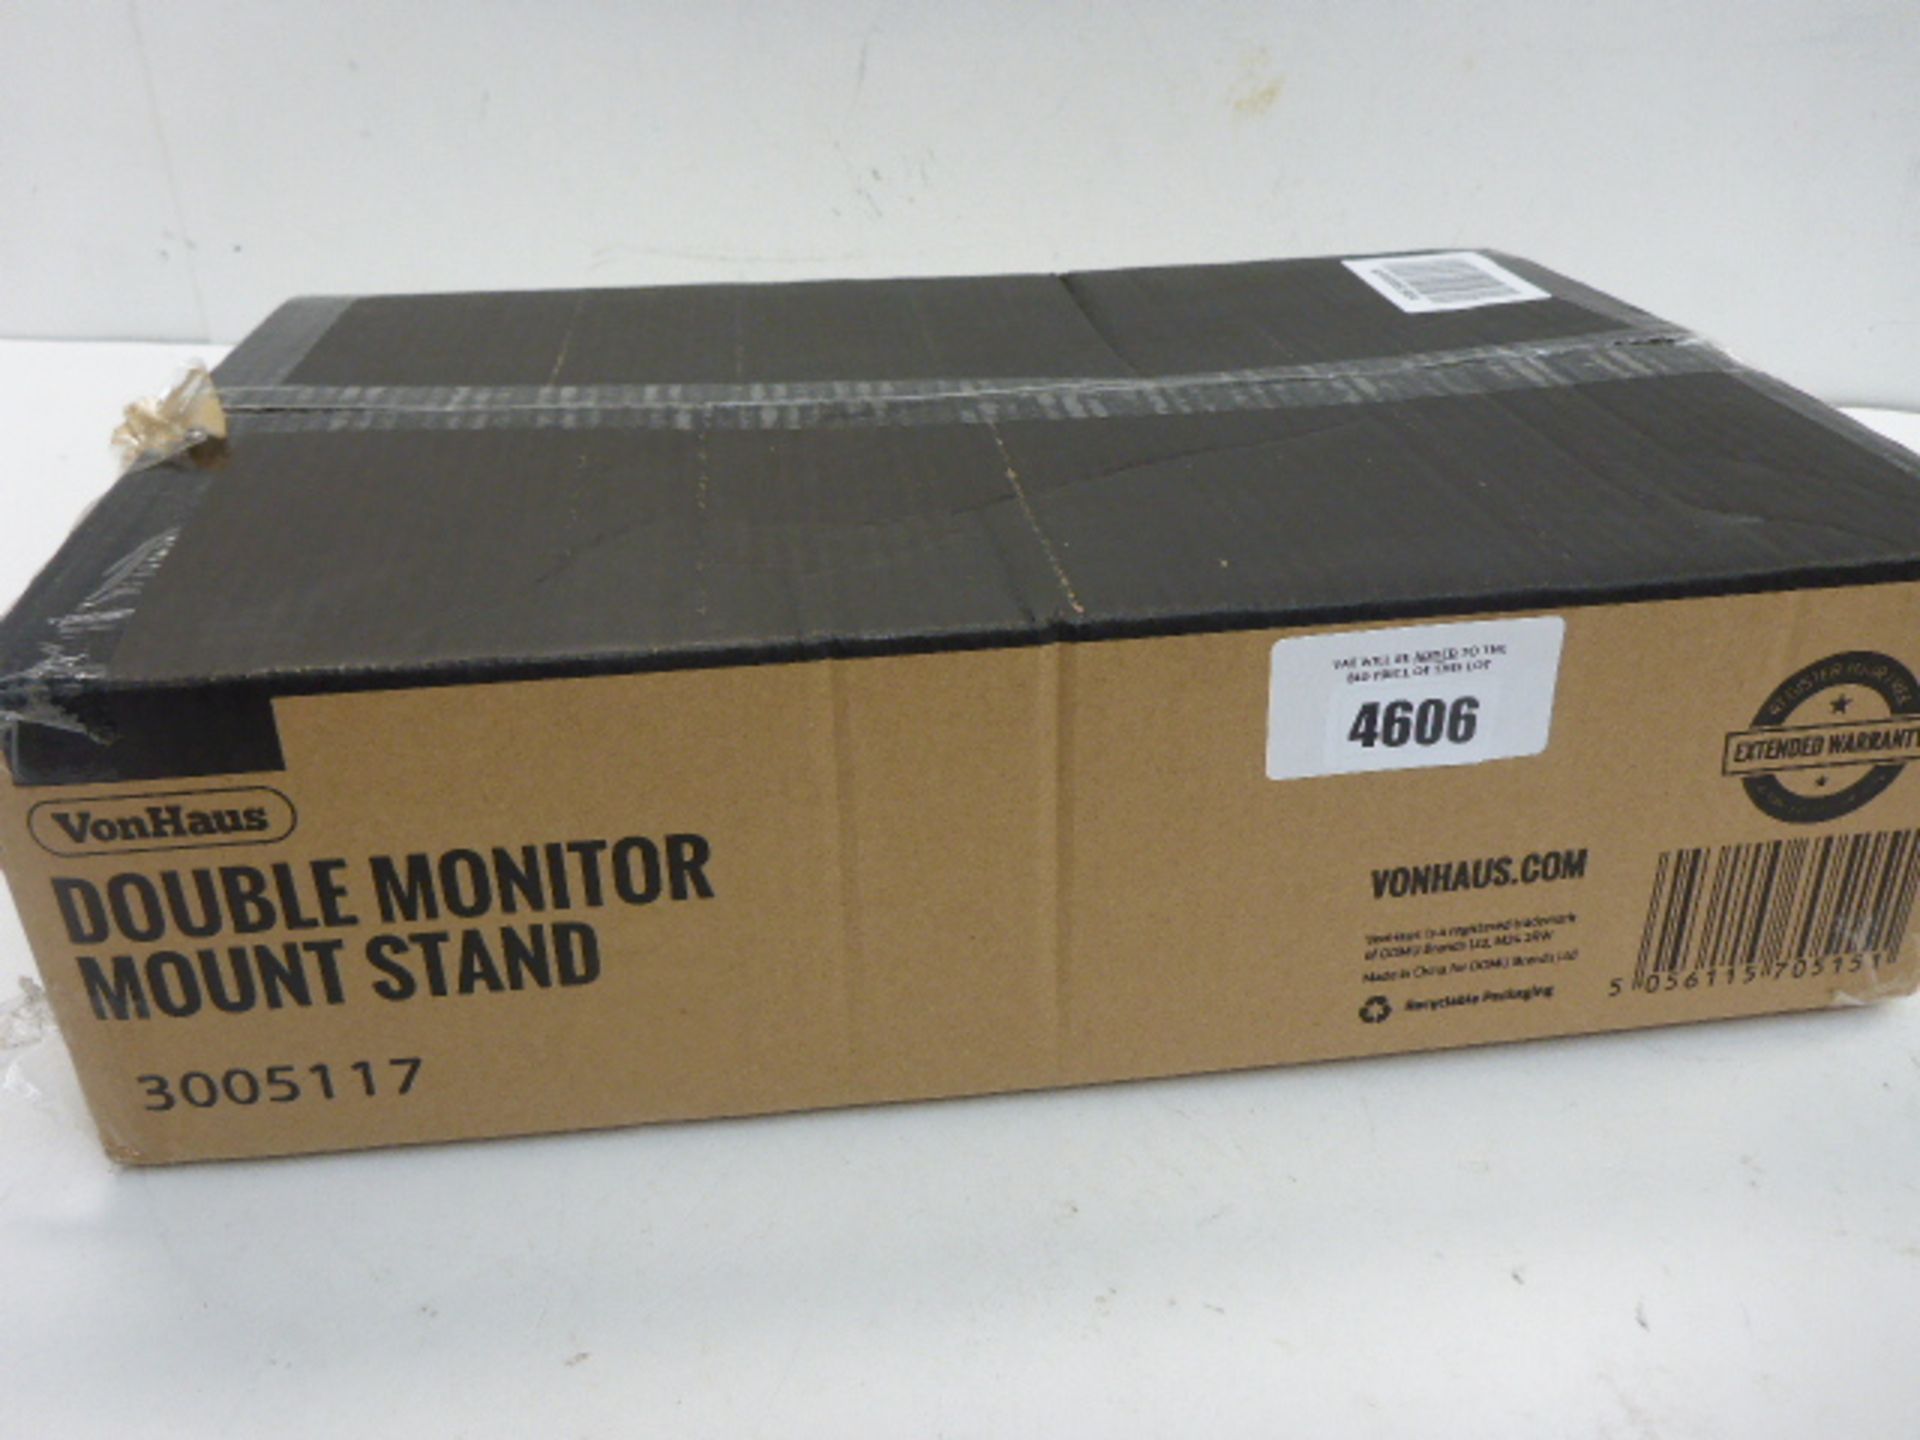 VonHaus double monitor mount stand